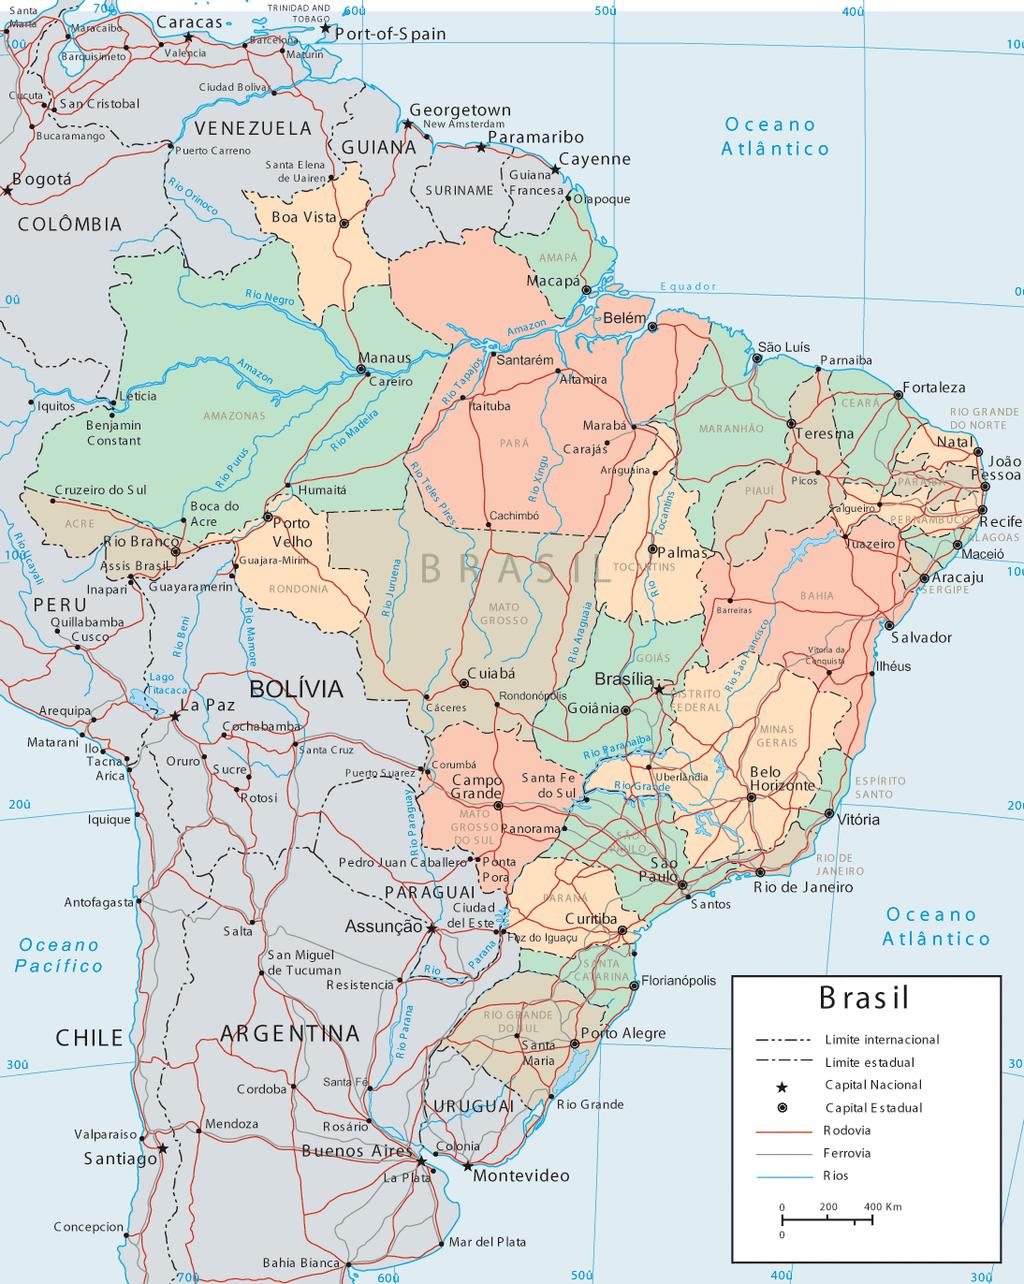 EXEMPLO DE MAPA Mapa do Brasil Fonte: www.